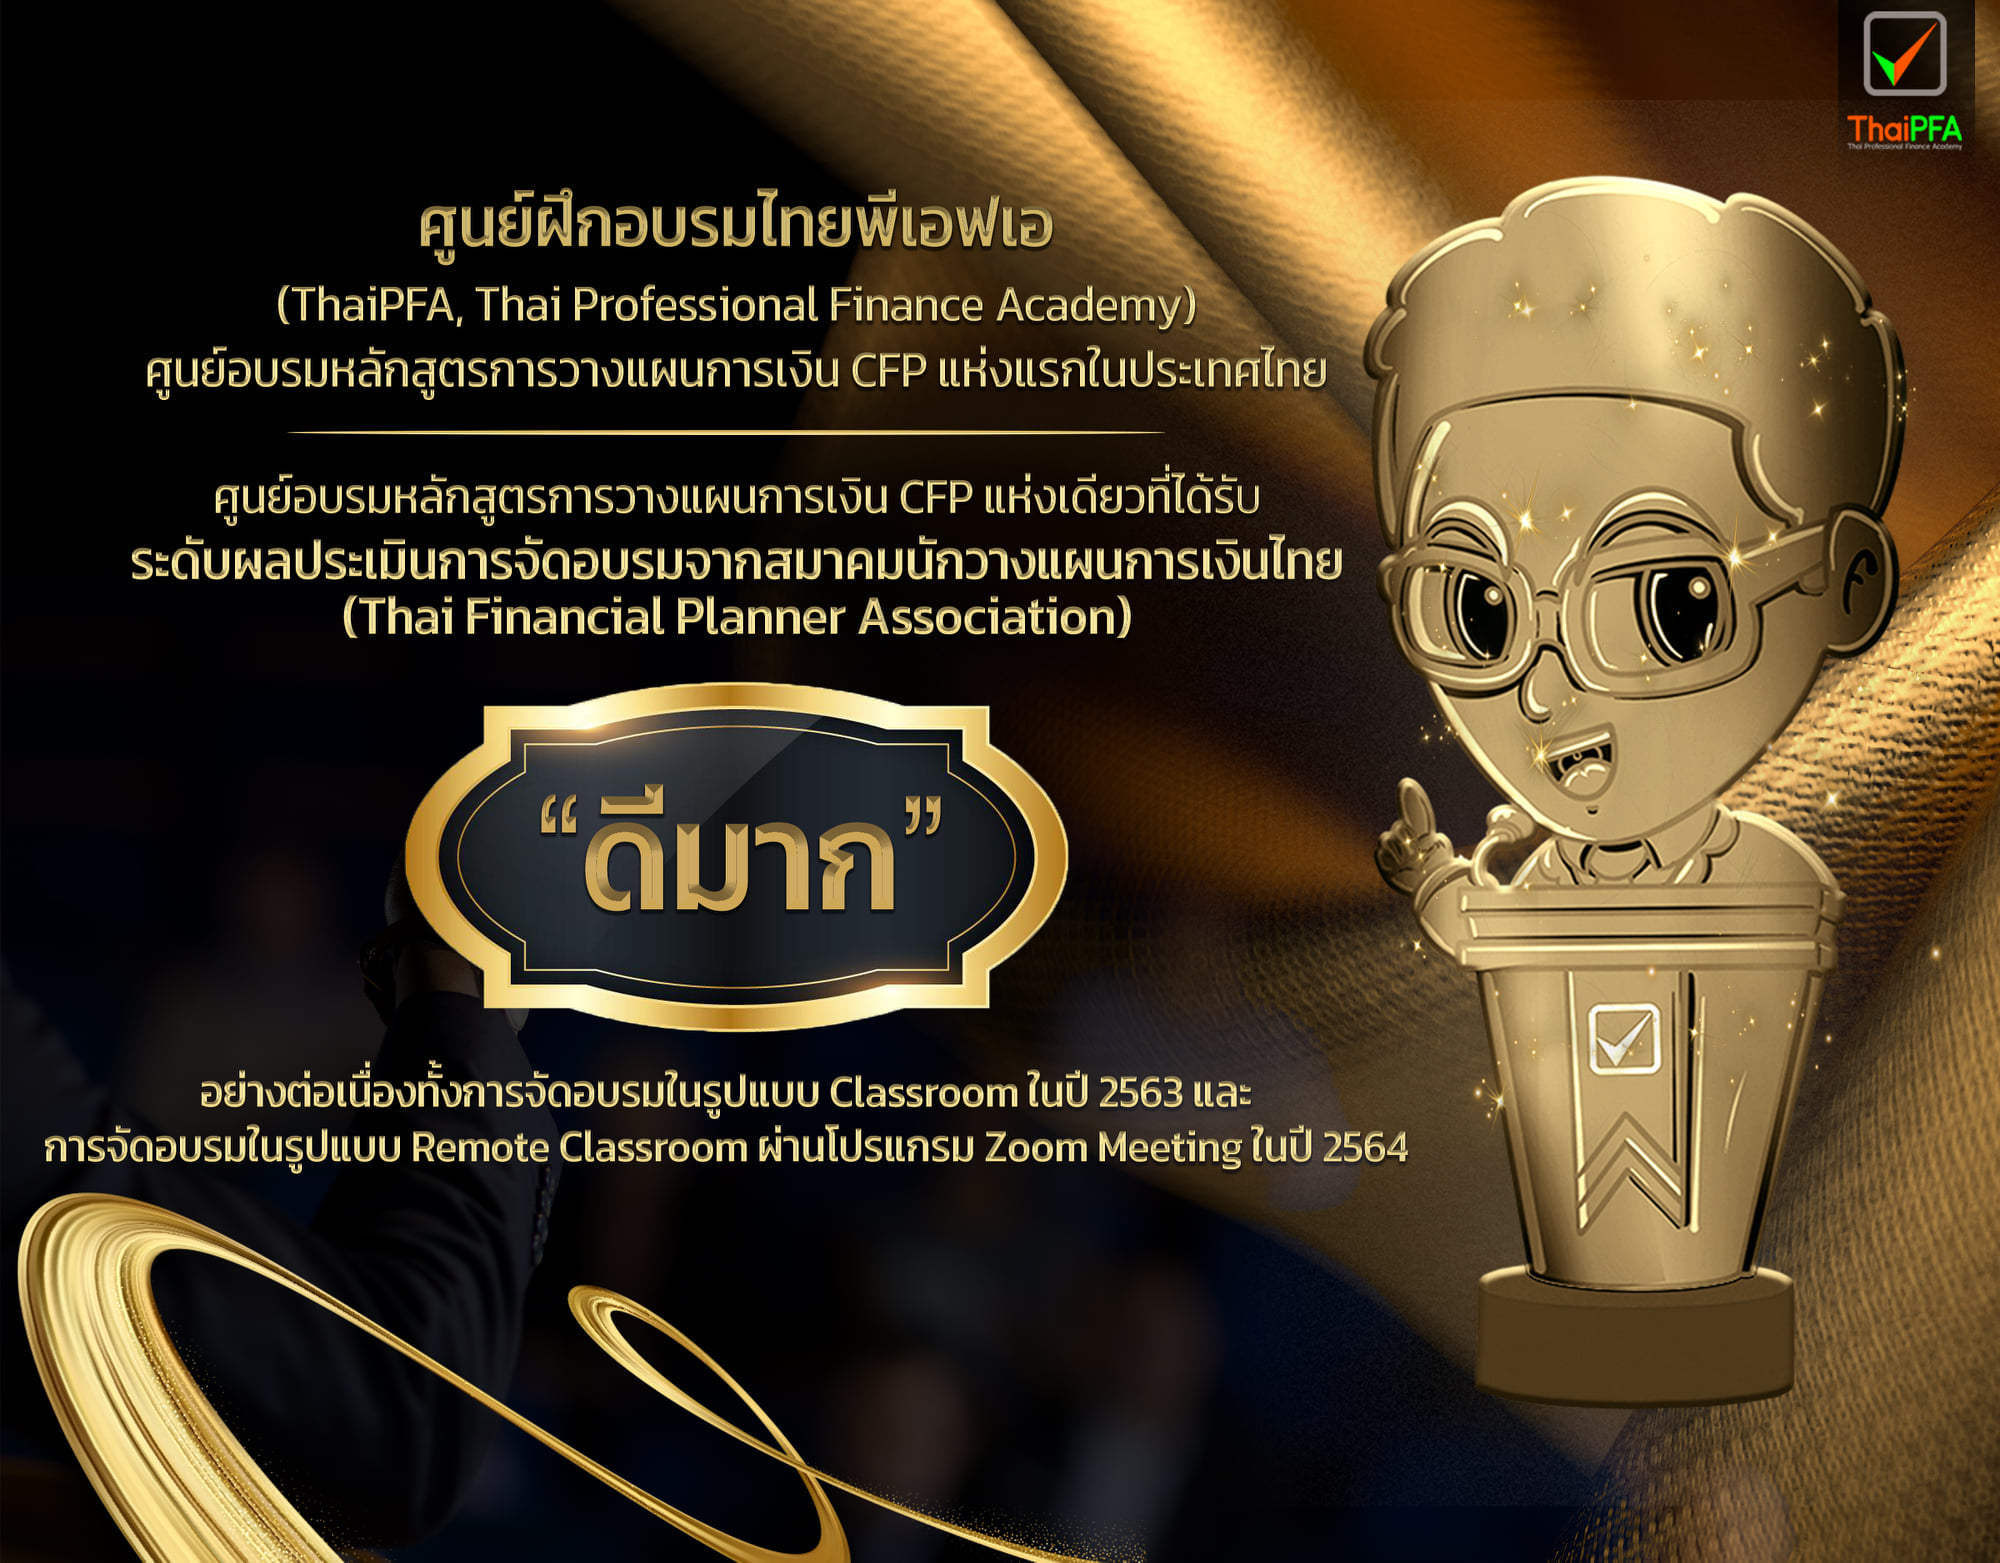 ศูนย์อบรม ThaiPFA